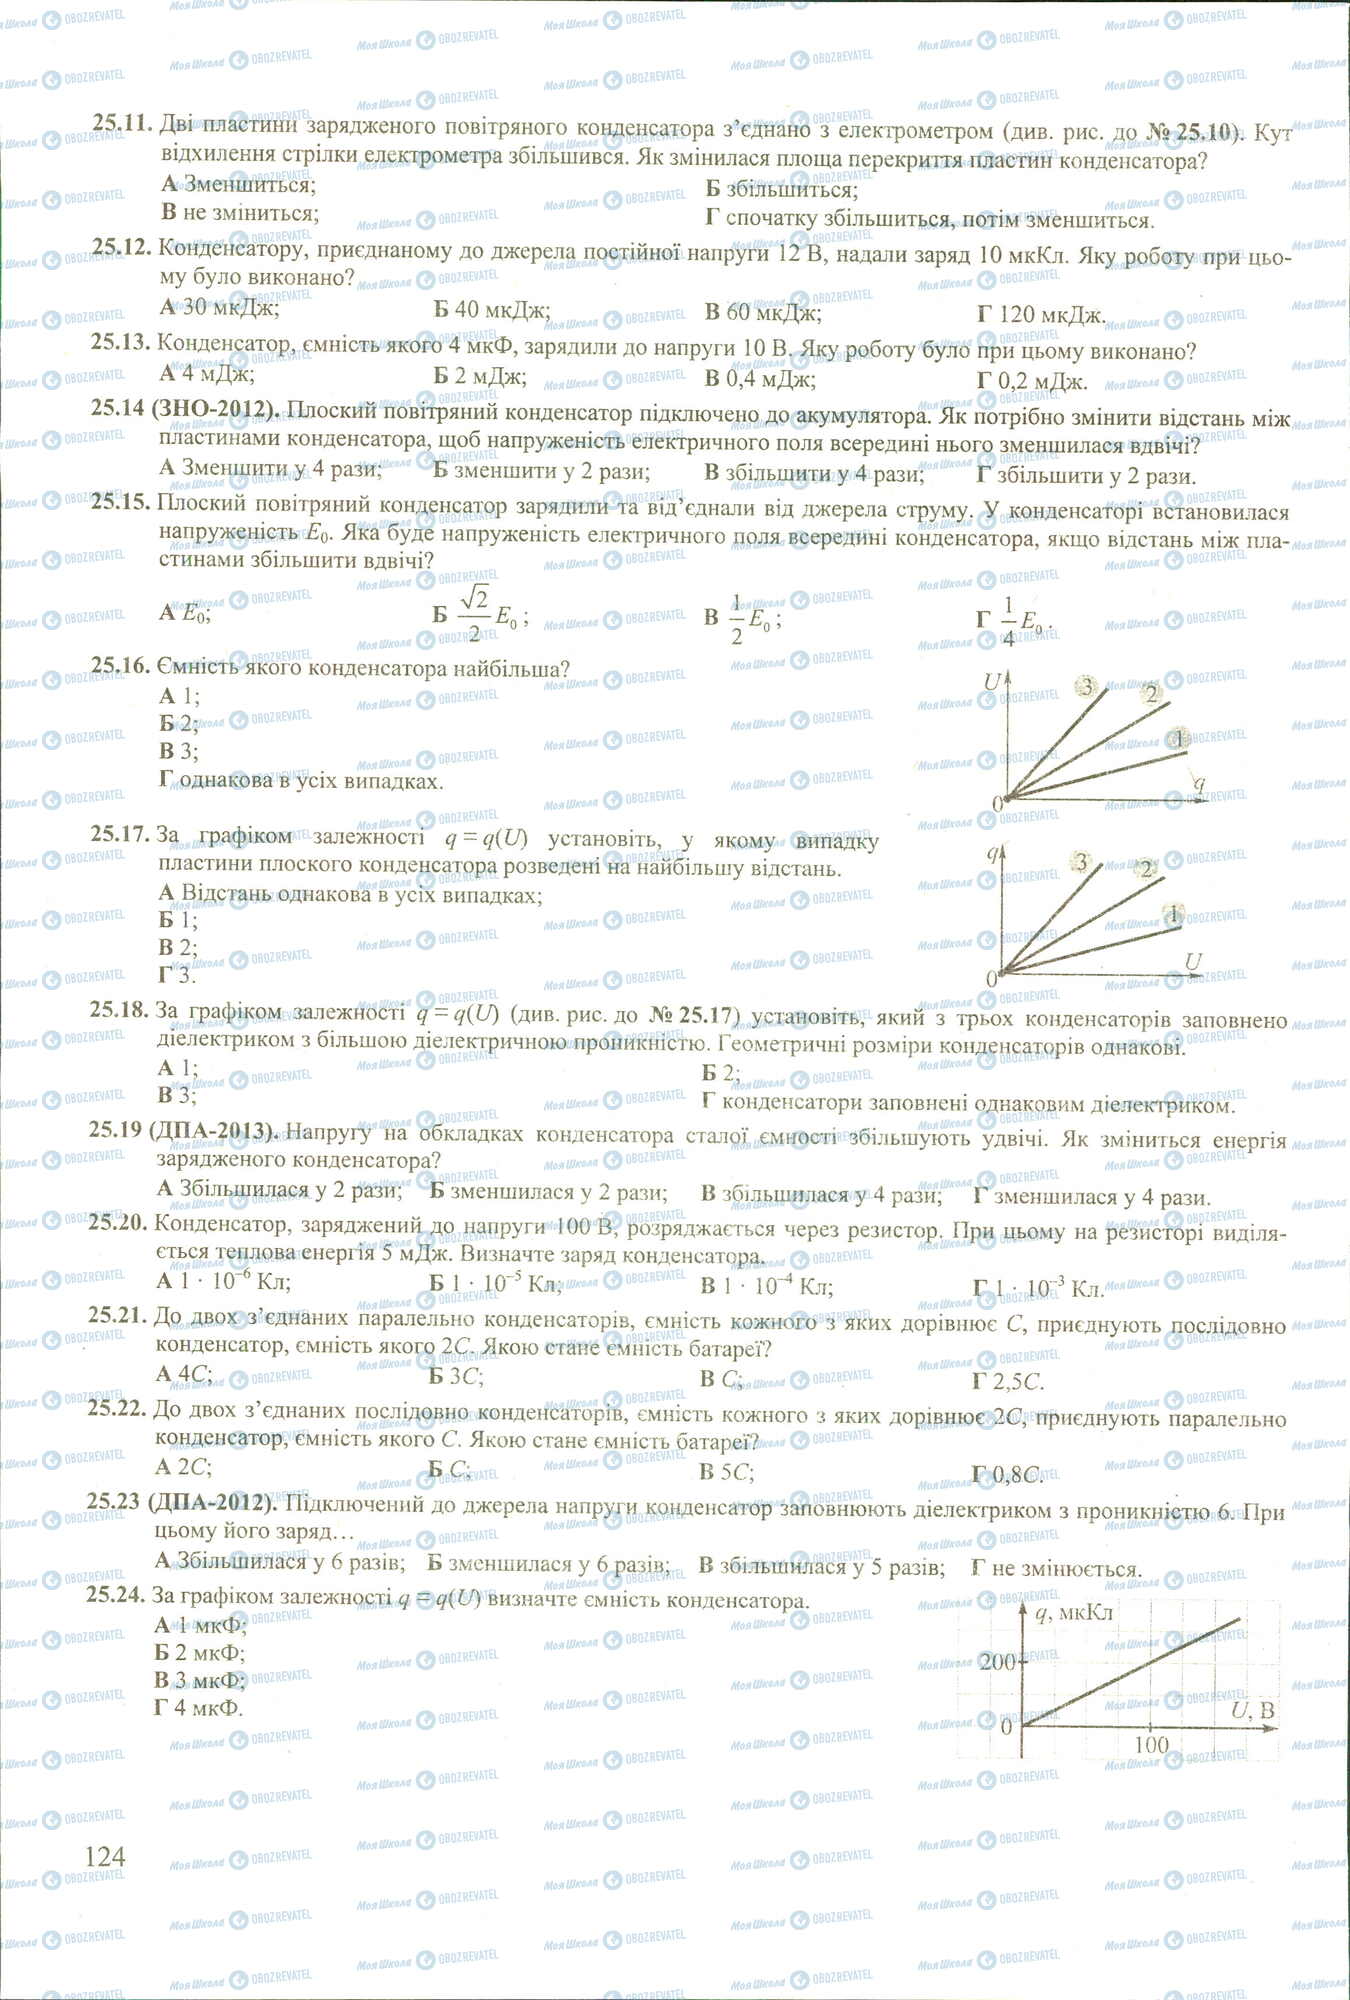 ЗНО Физика 11 класс страница 11-24